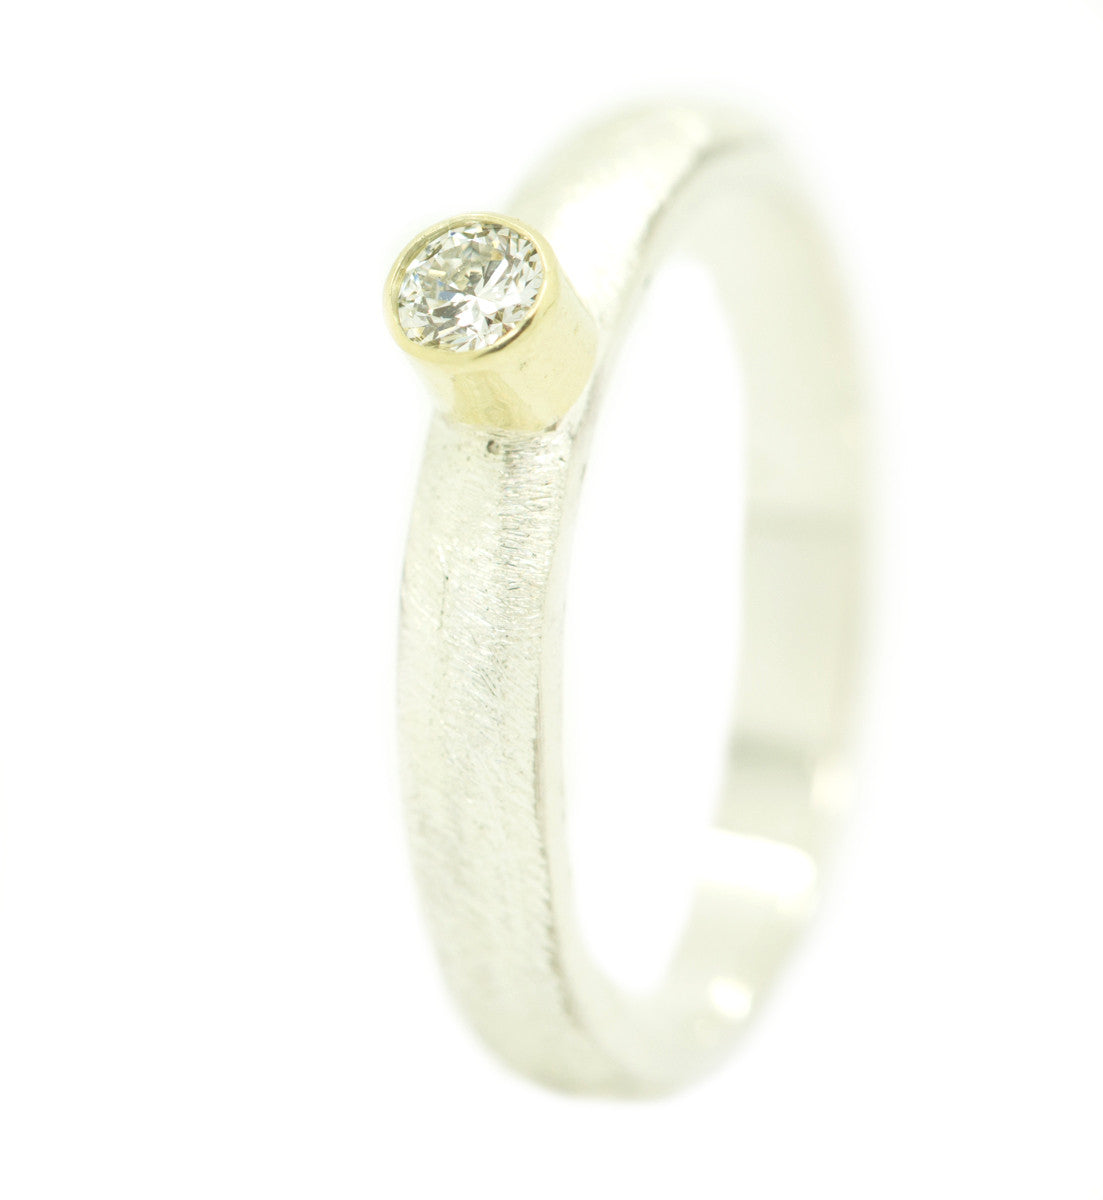 Handgemaakte en fairtrade ruwe zilveren ring met briljant geslepen diamant gezet in goud